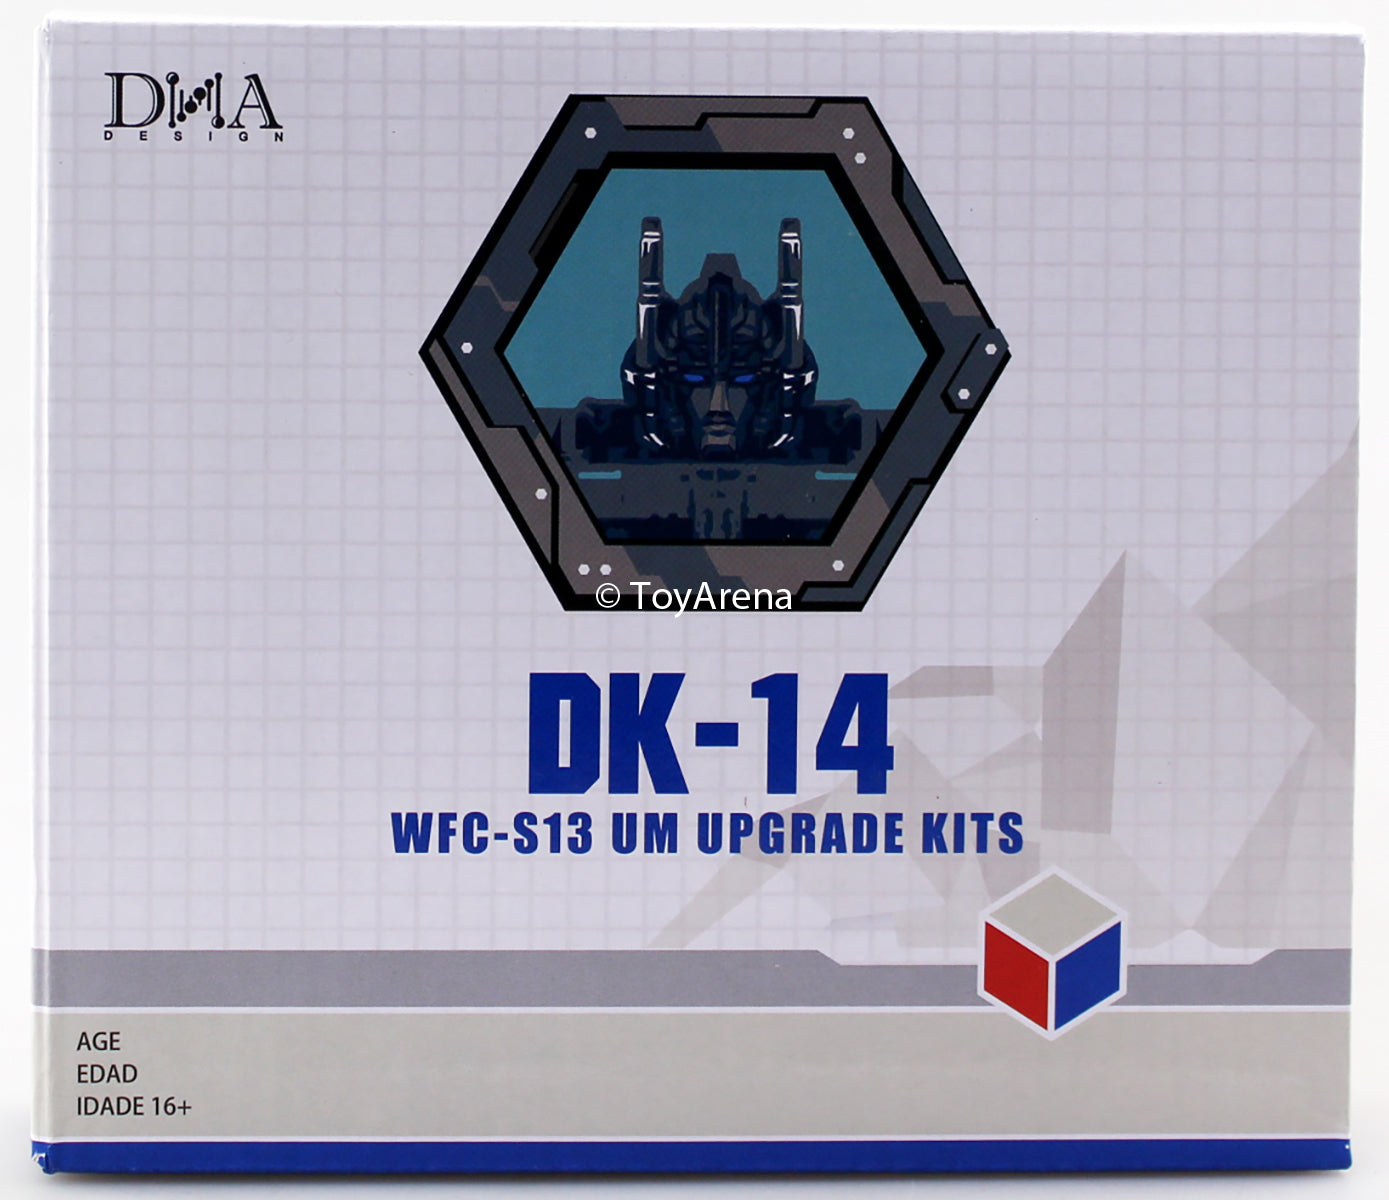 DNA Design DK-14 Upgrade kit for WFC-S13